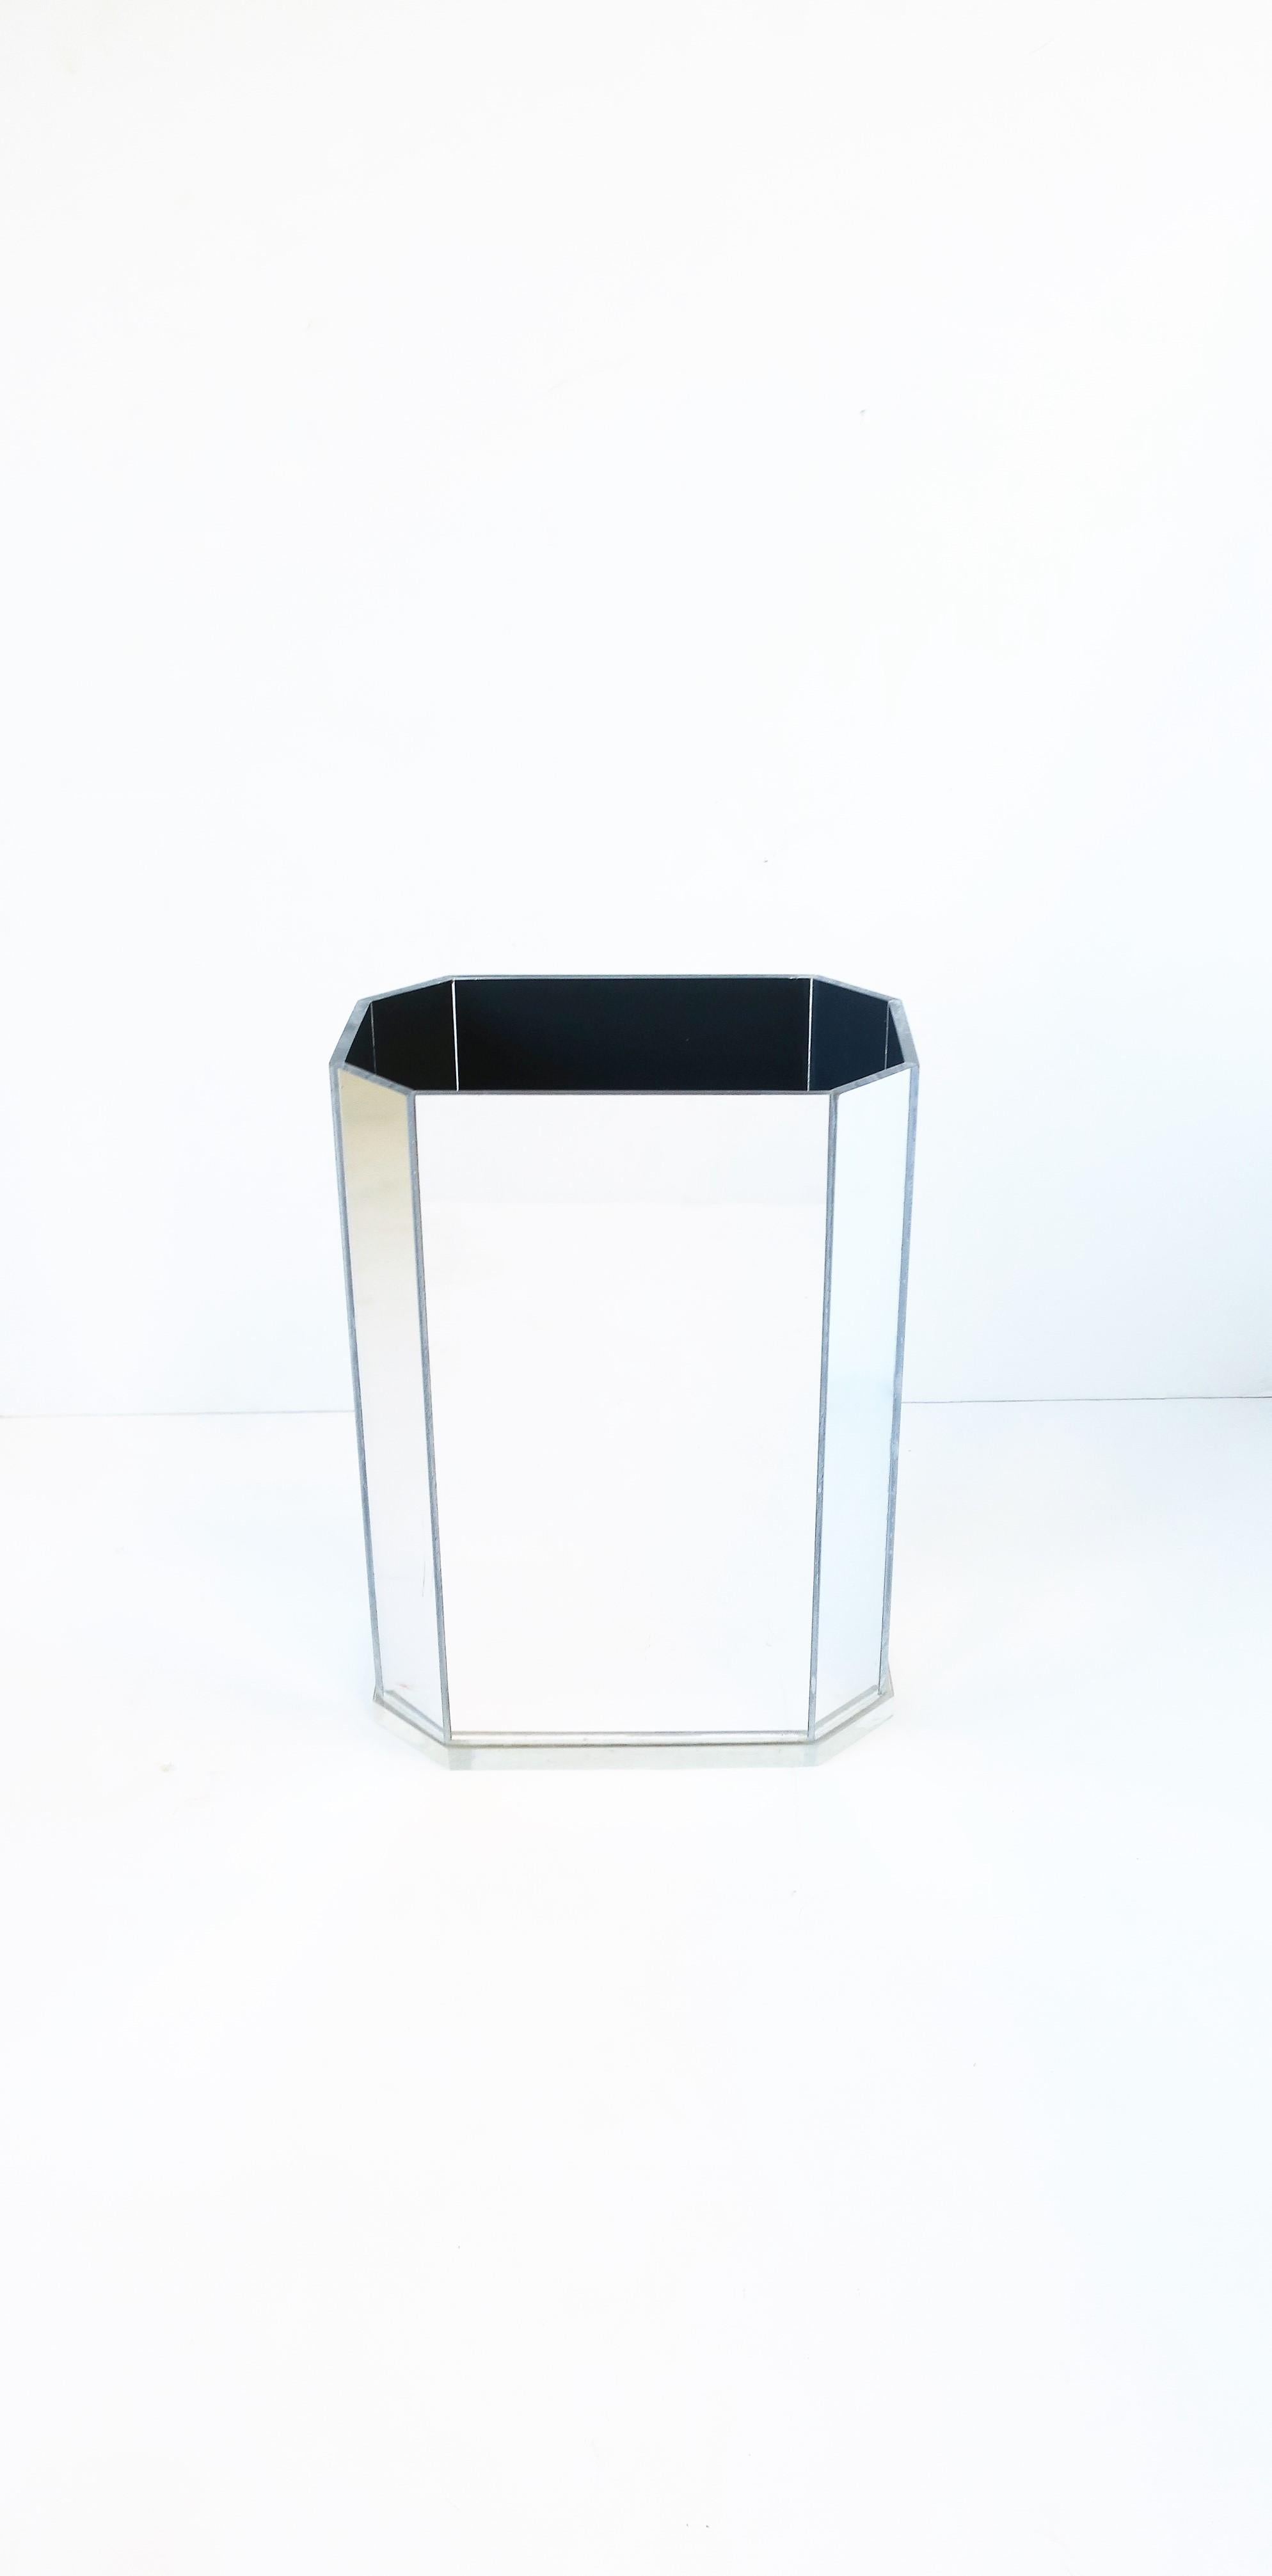 mirrored wastebasket